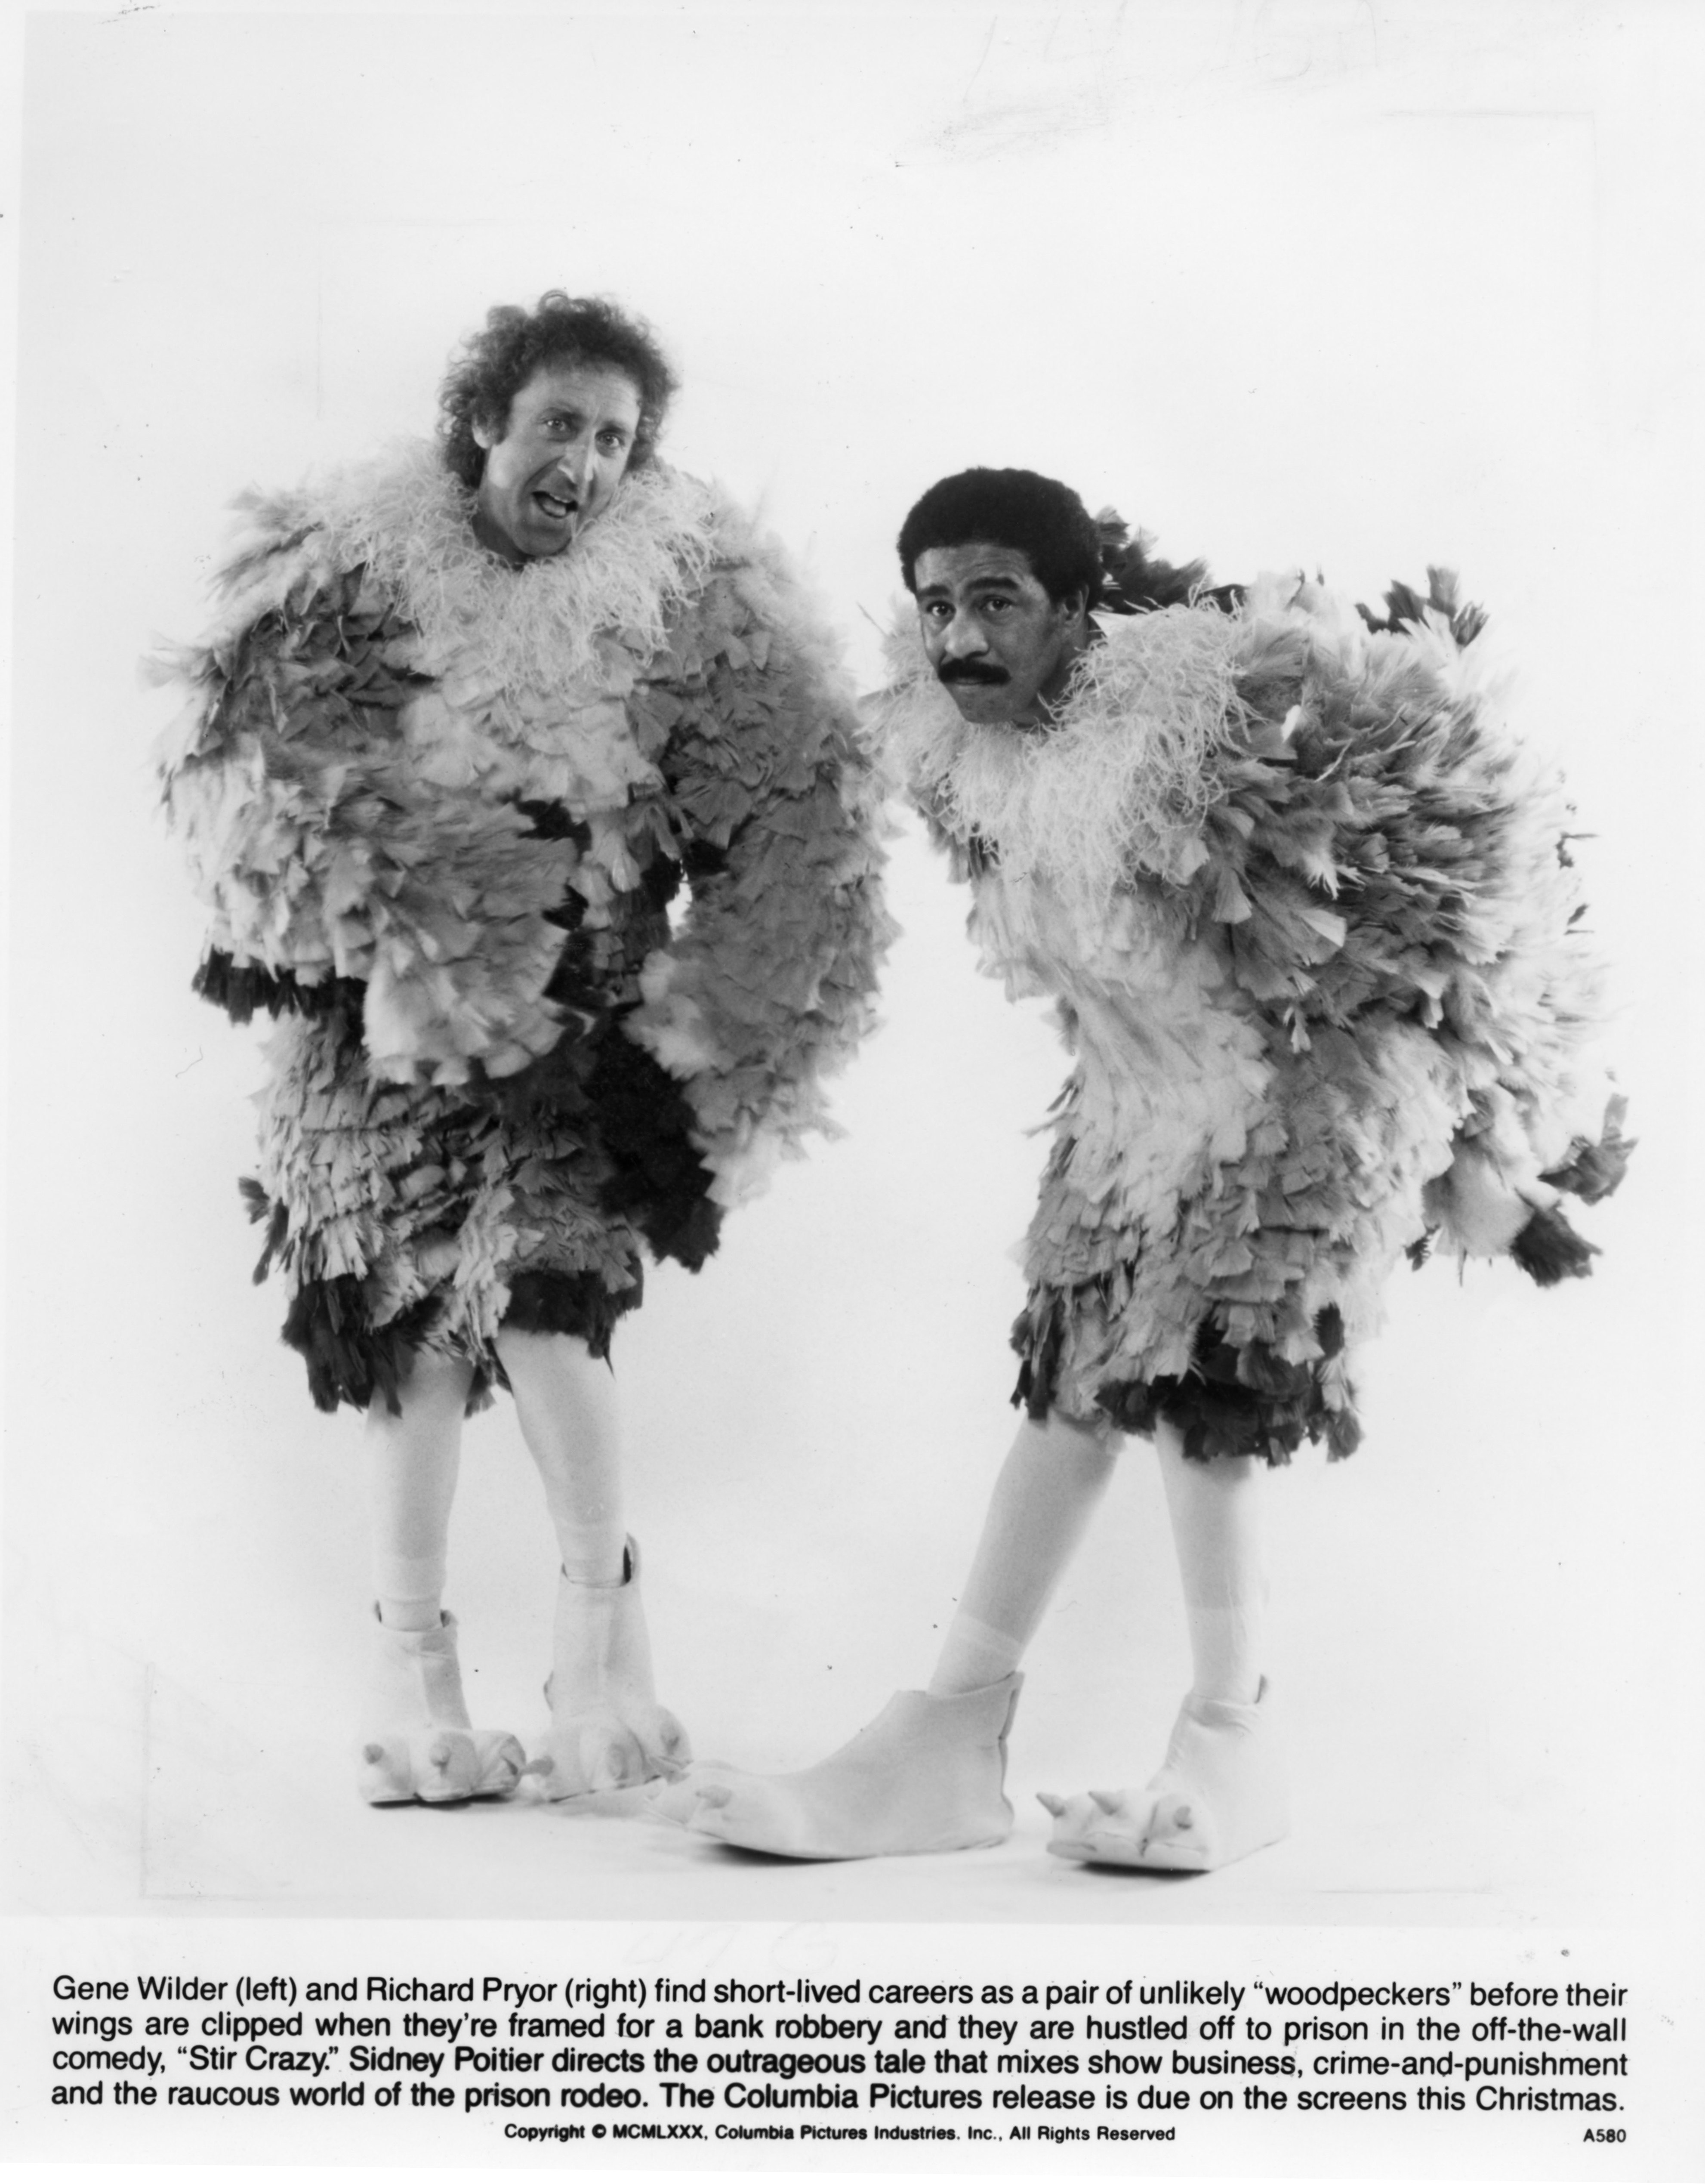 Gene Wilder and Richard Pryo